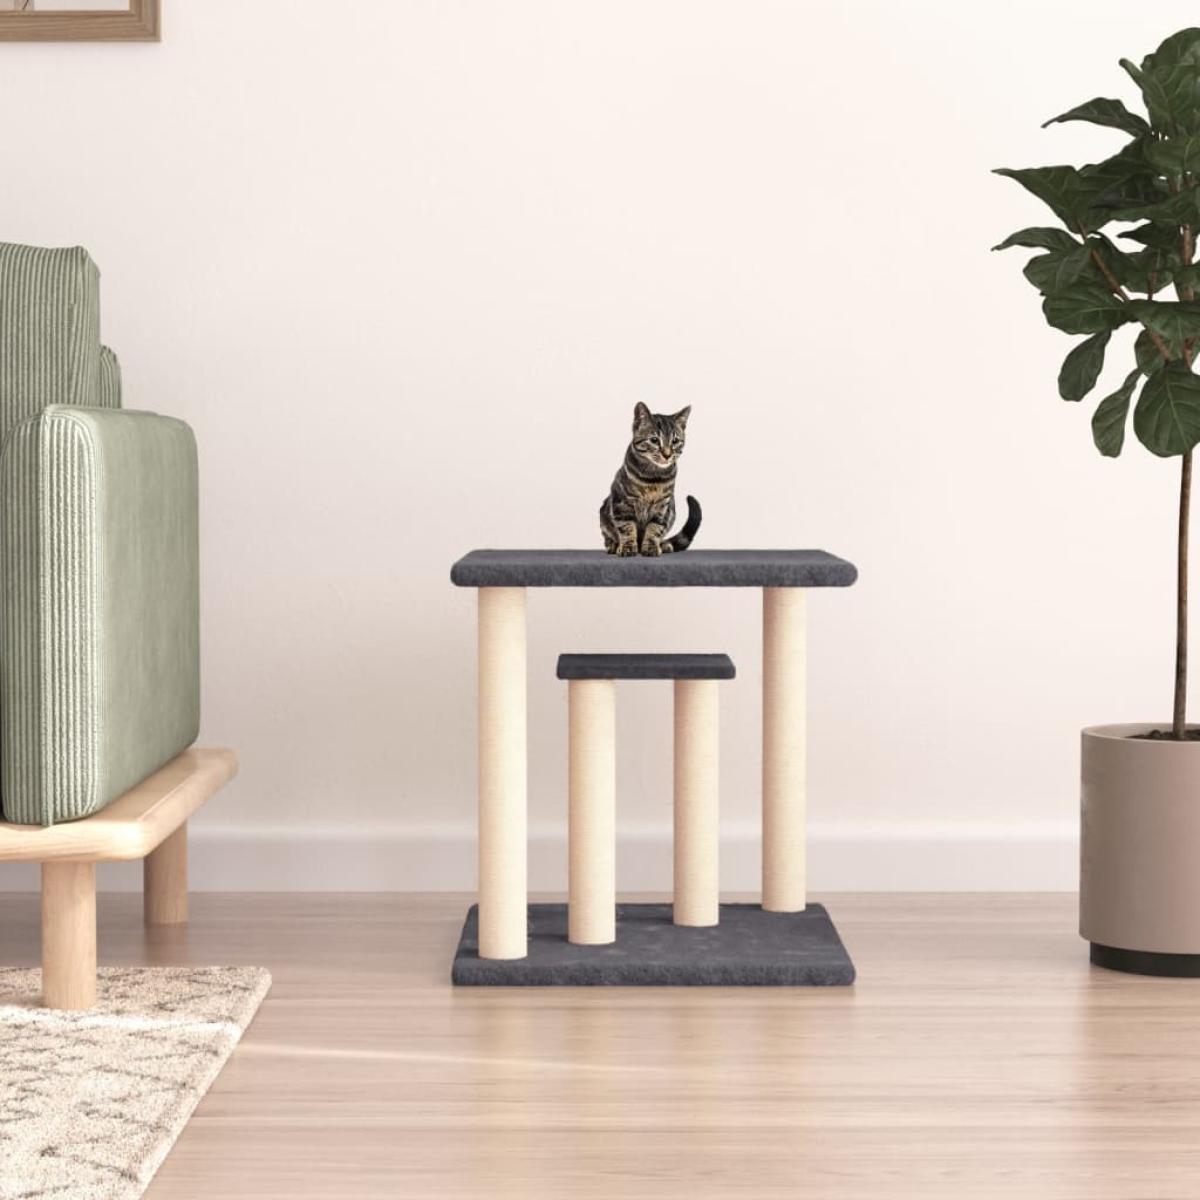 Postes rascadores para gatos con plataformas gris oscuro 50 cm